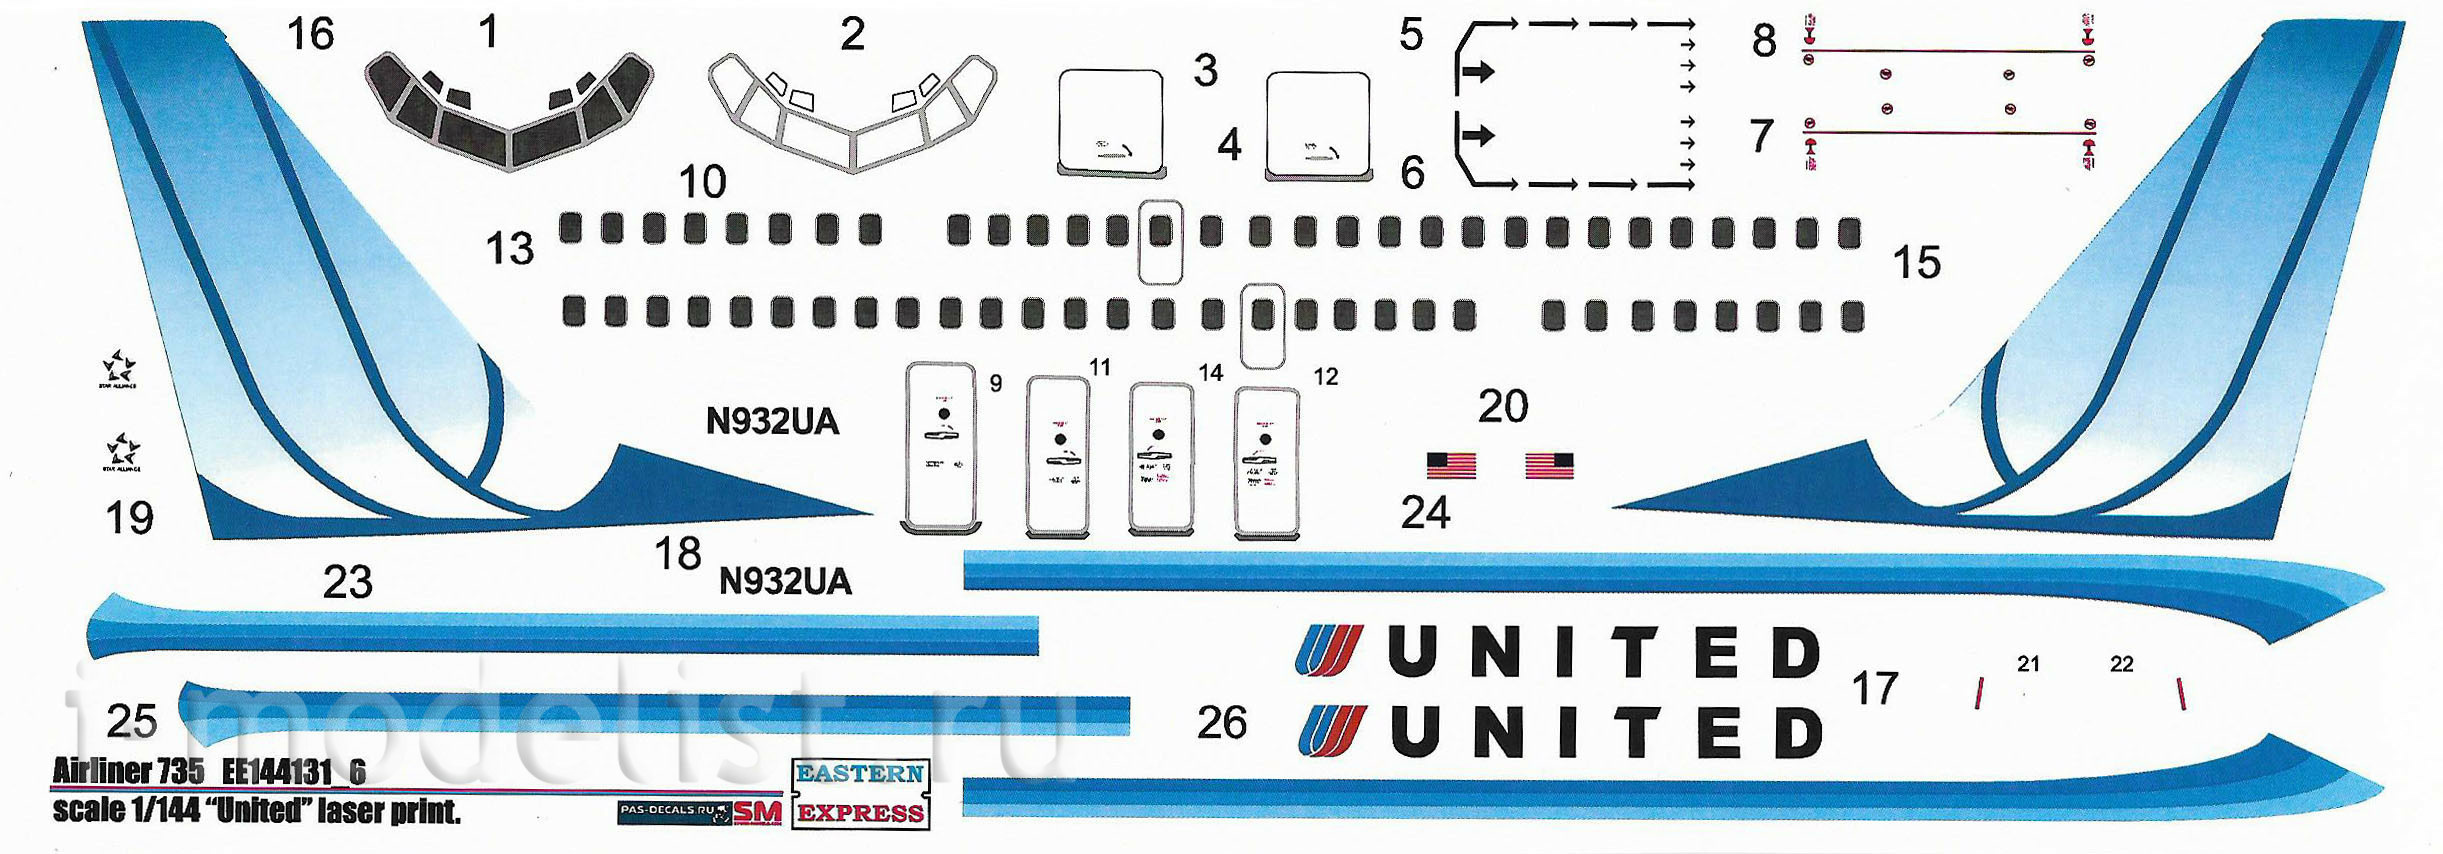 144131-6 Восточный Экспресс 1/144 Авиалайнер 737-500  United